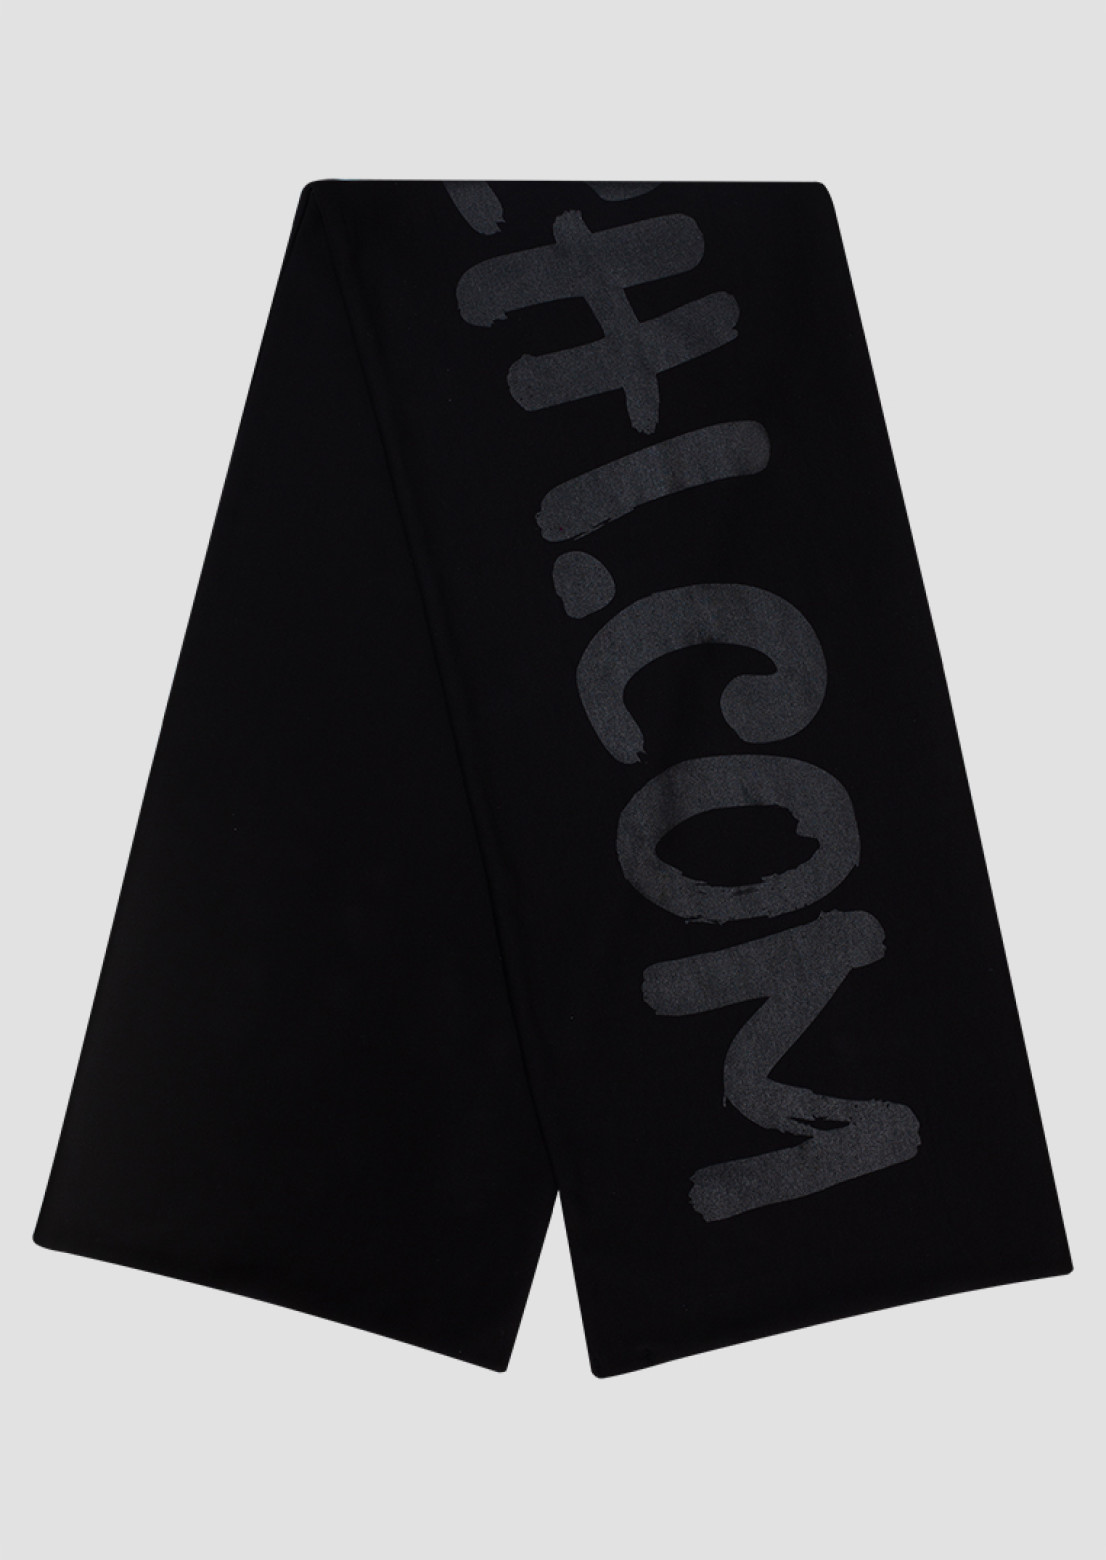 Black printed cabanchi.com scarf